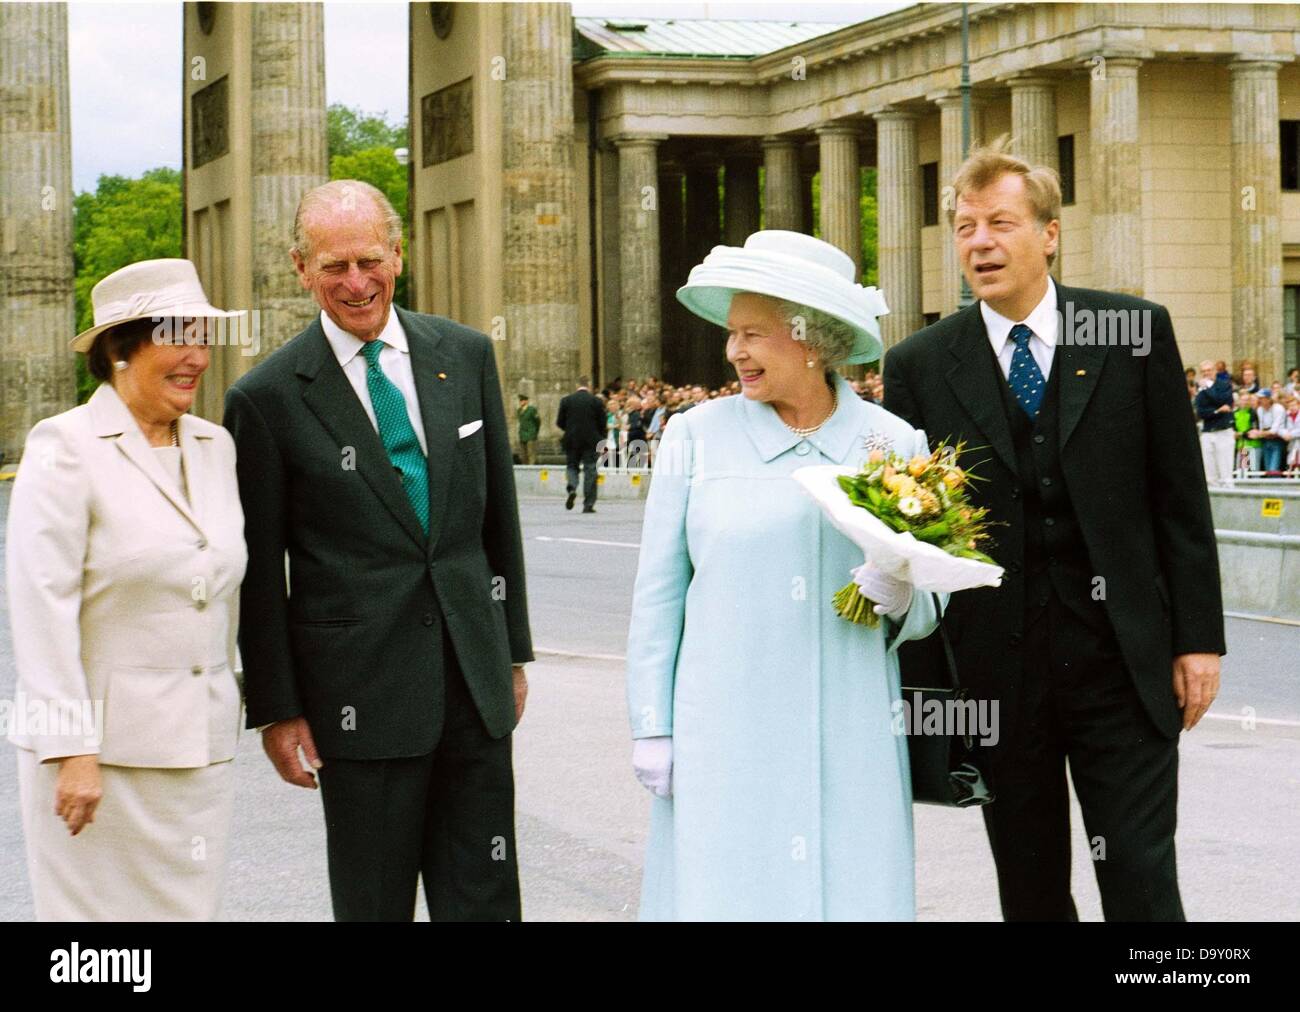 Monika Diepgen, Prince Philipp, Queen Elizabeth II. and governing mayor of Berlin Eberhard Diepgen in front of Brandenburg Gate. Stock Photo